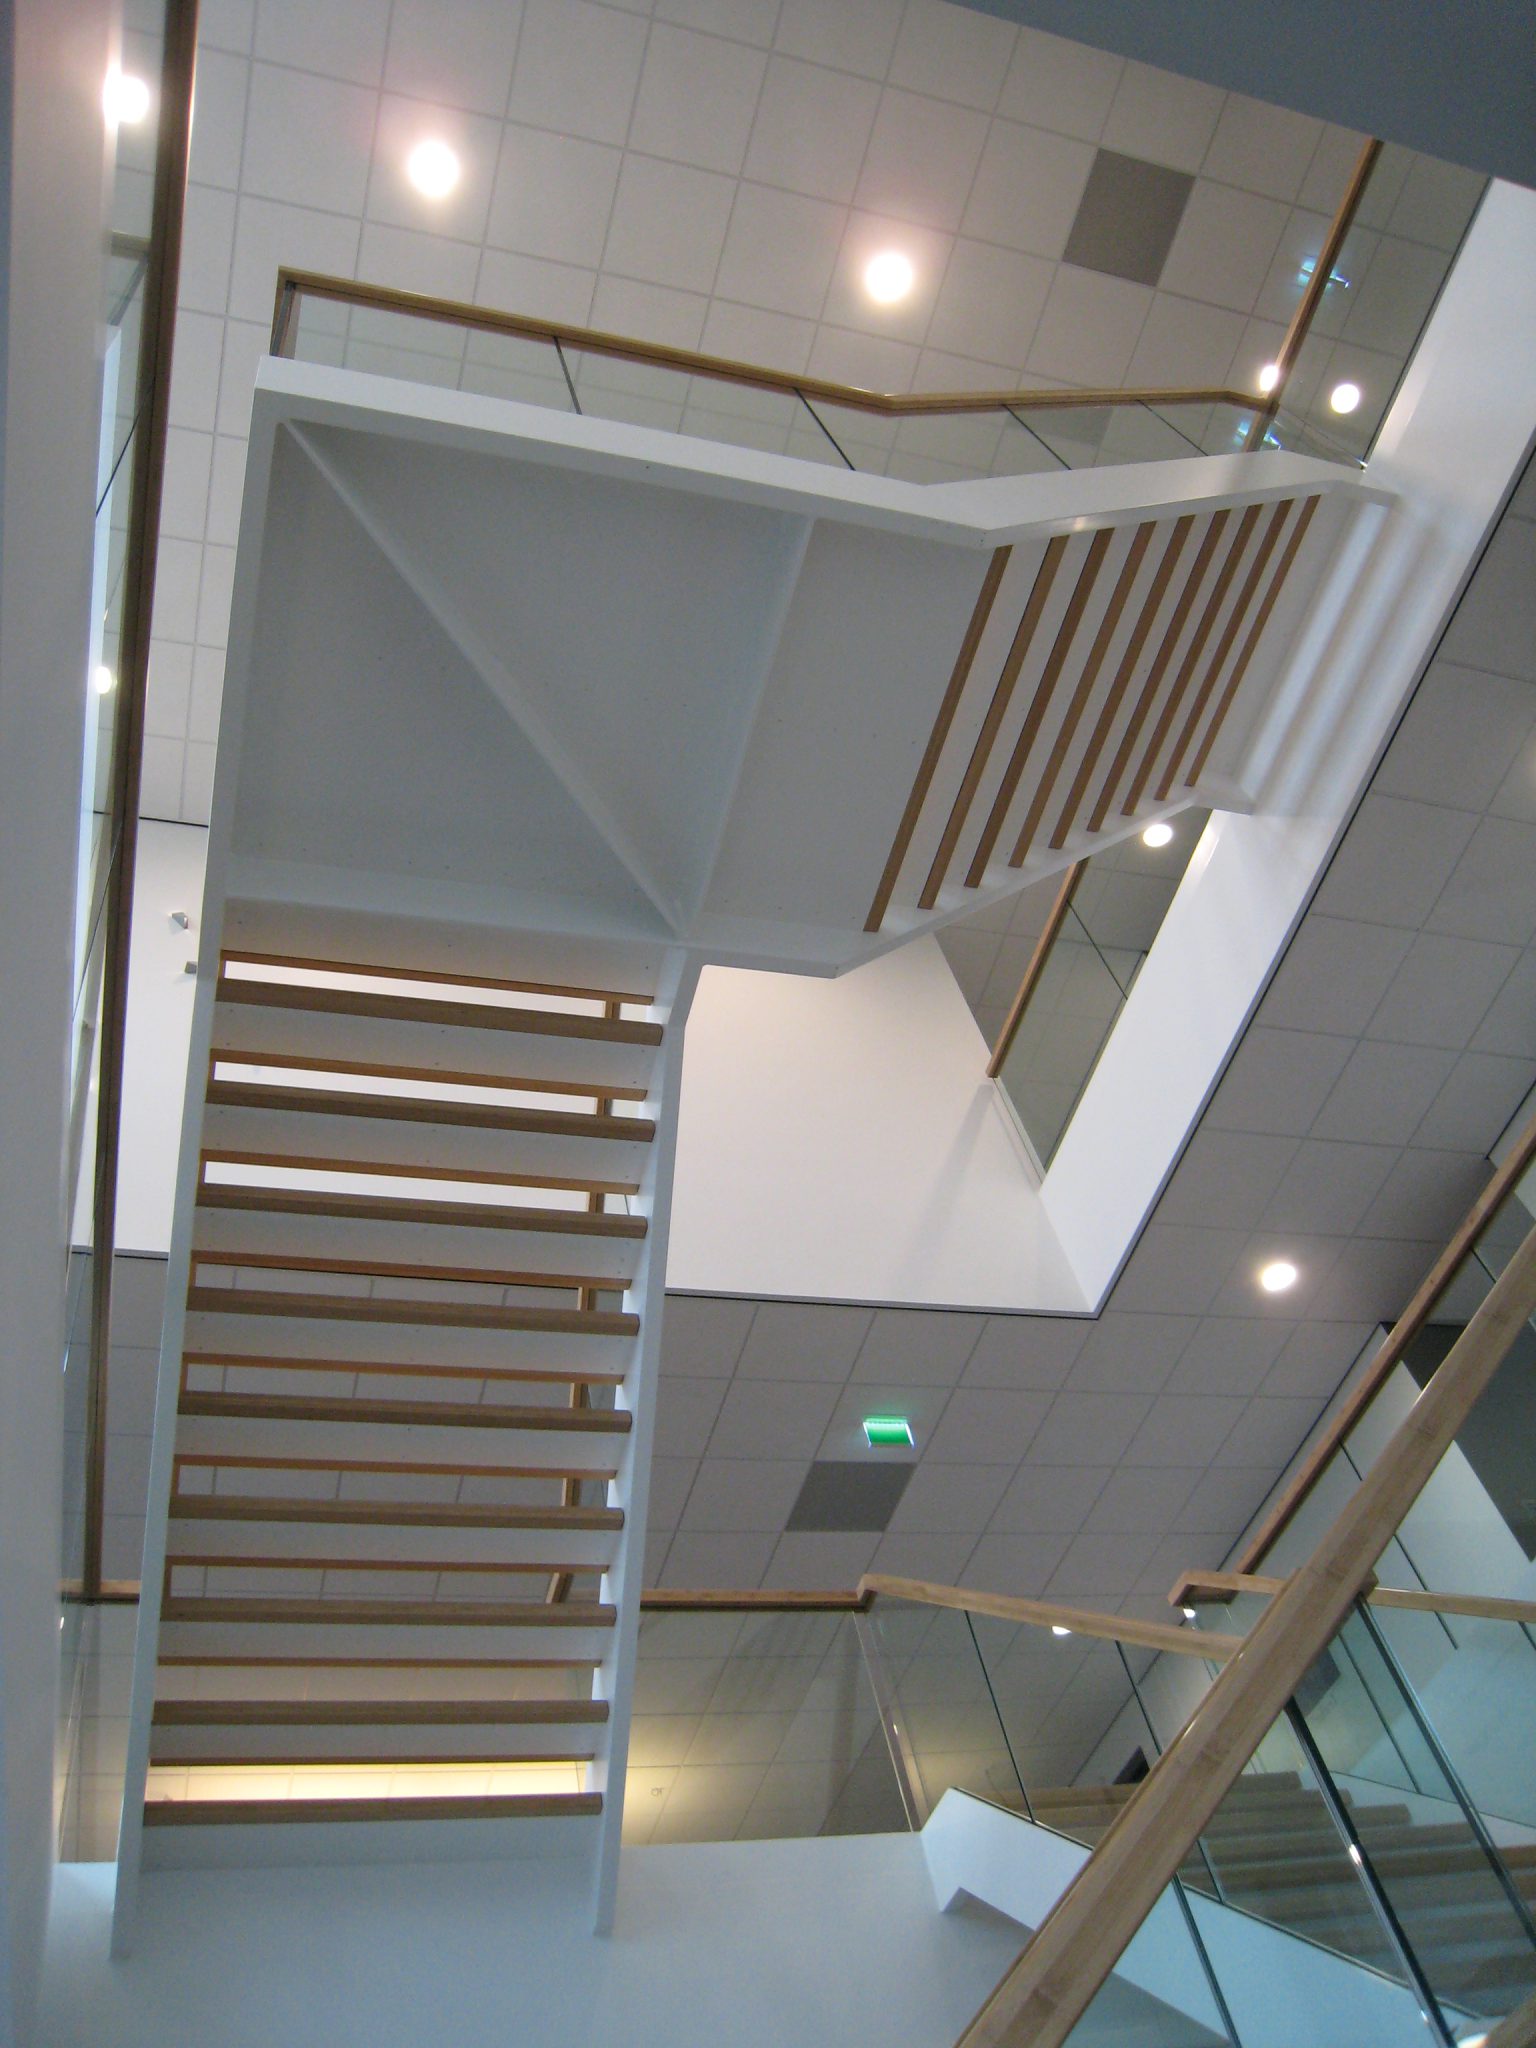 GS Staalwerken bouwde een zwevende trap, secundaire kantoortrap en industriële trappen voor dit project. 